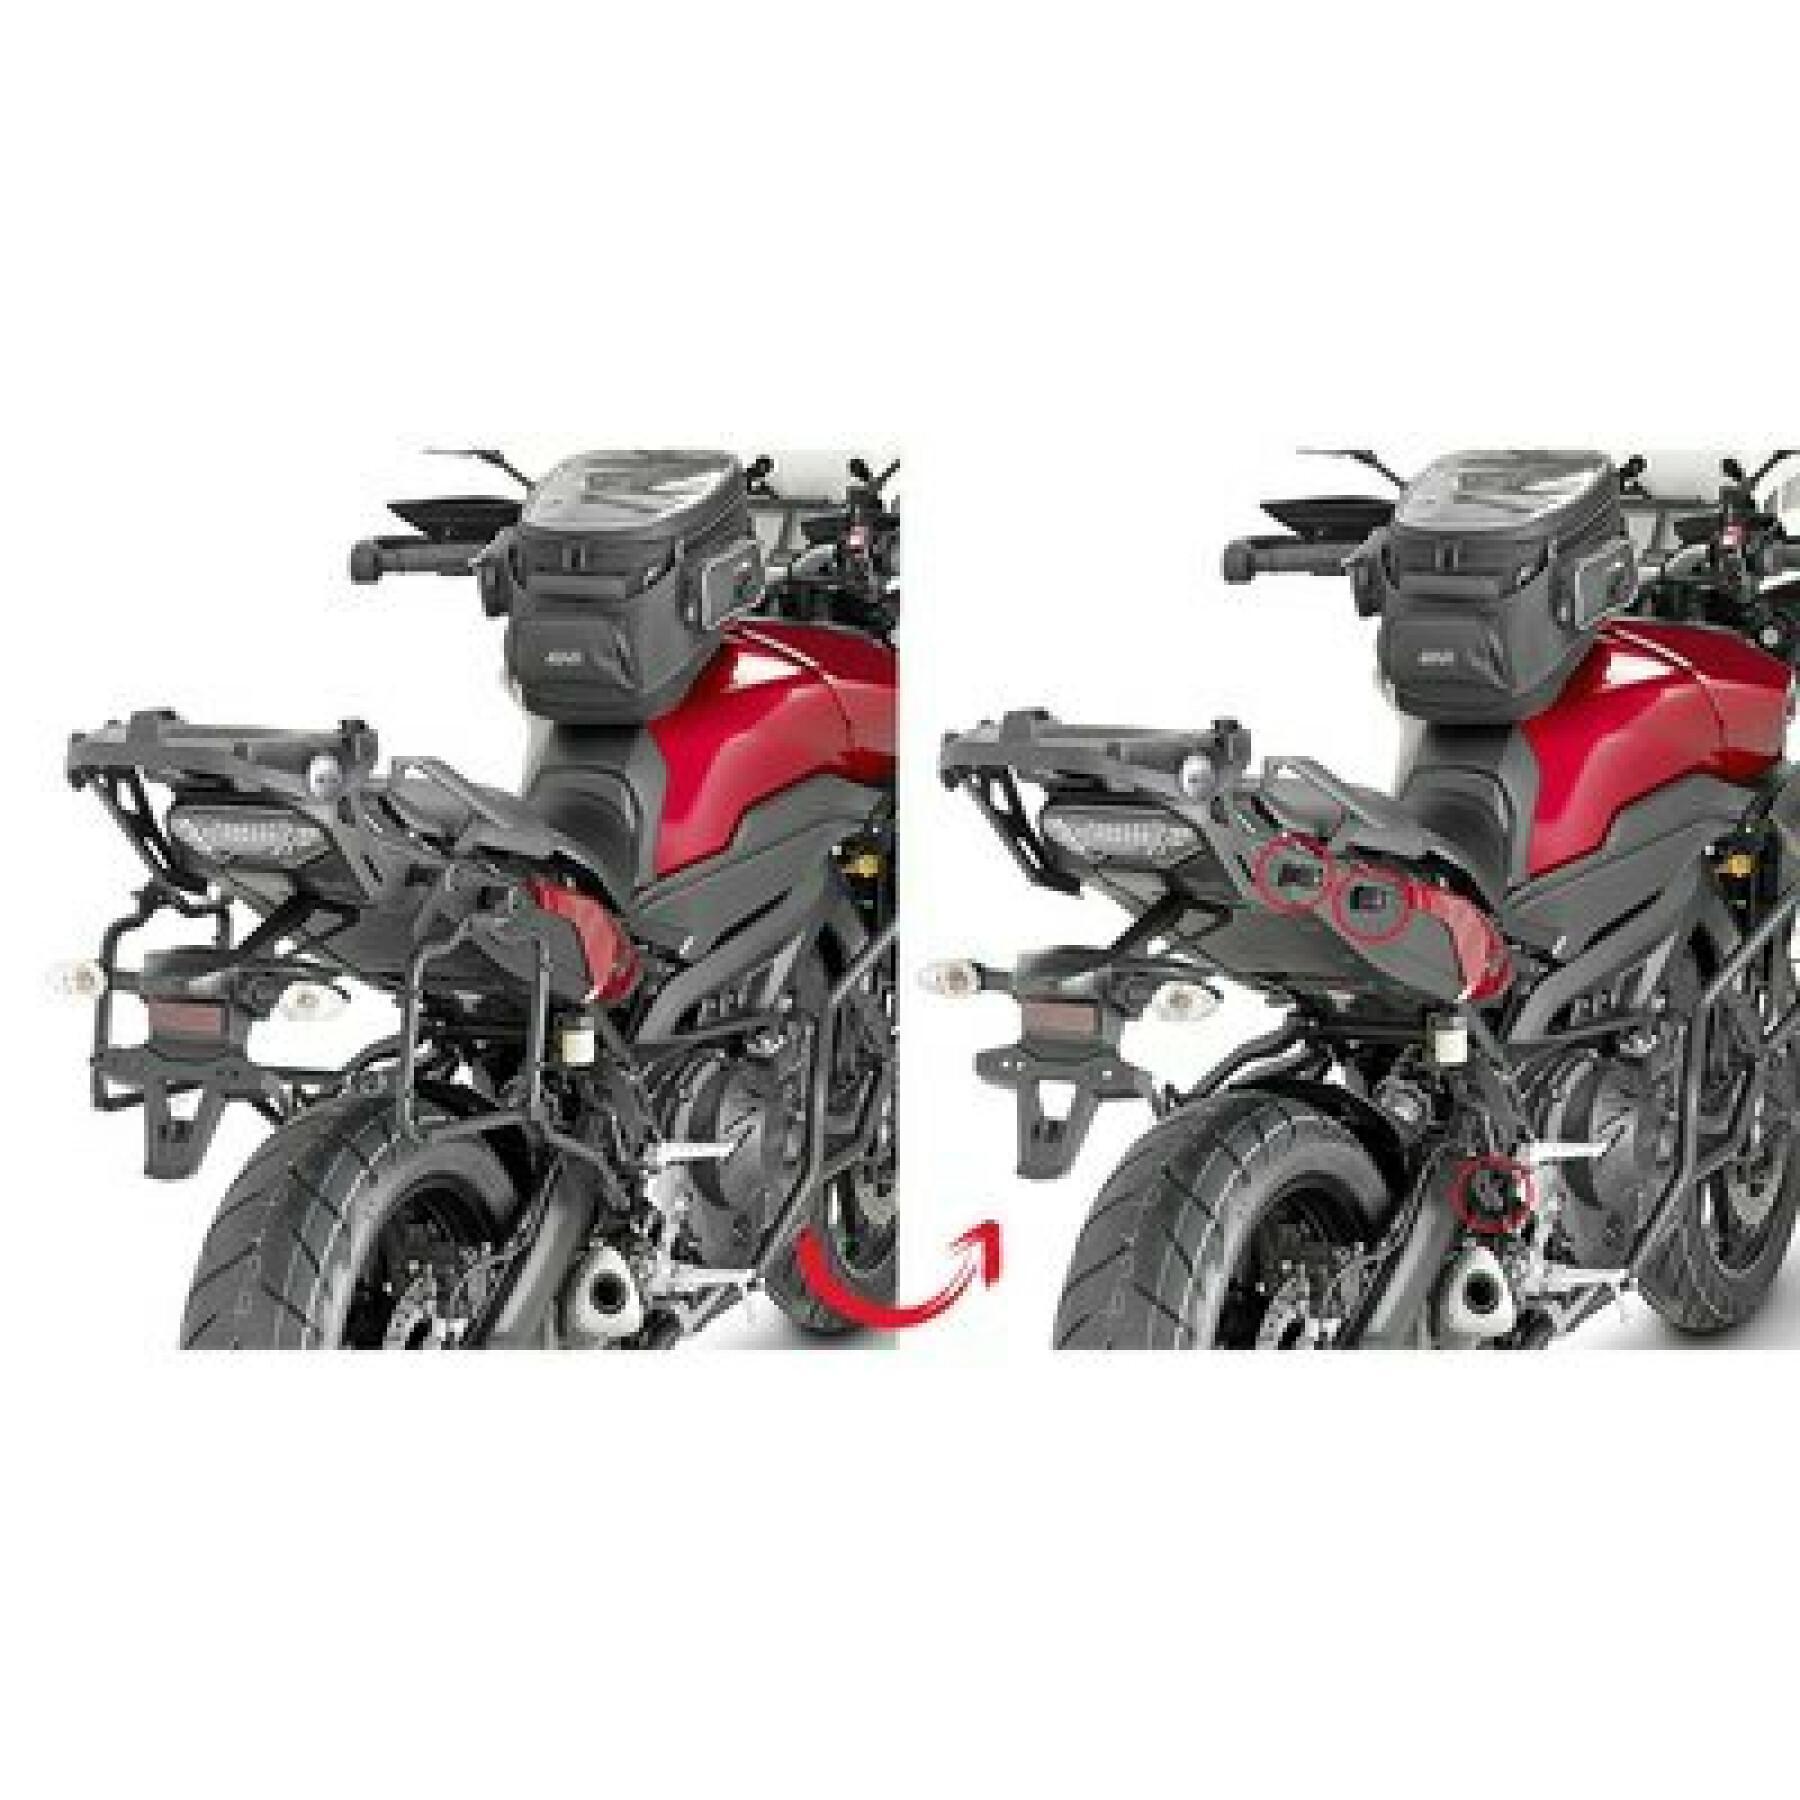 Supporto per valigie laterali per moto Givi Monokey Yamaha Mt-09 Tracer (15 À 17)